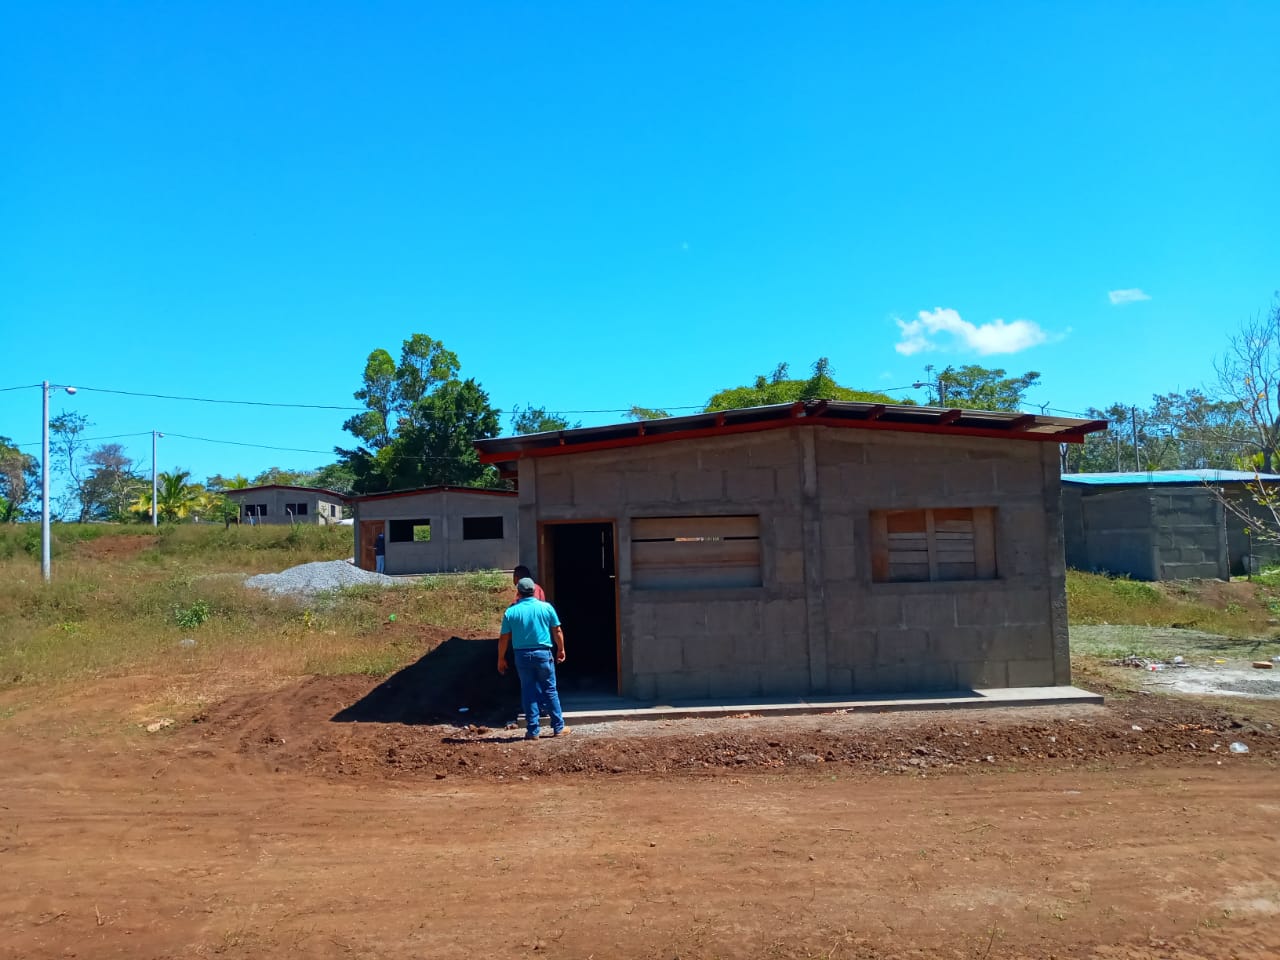 Avanza construcción de viviendas Bismarck Martínez en El Rosario Carazo. Manuel Aguilar/ La Primerísima 